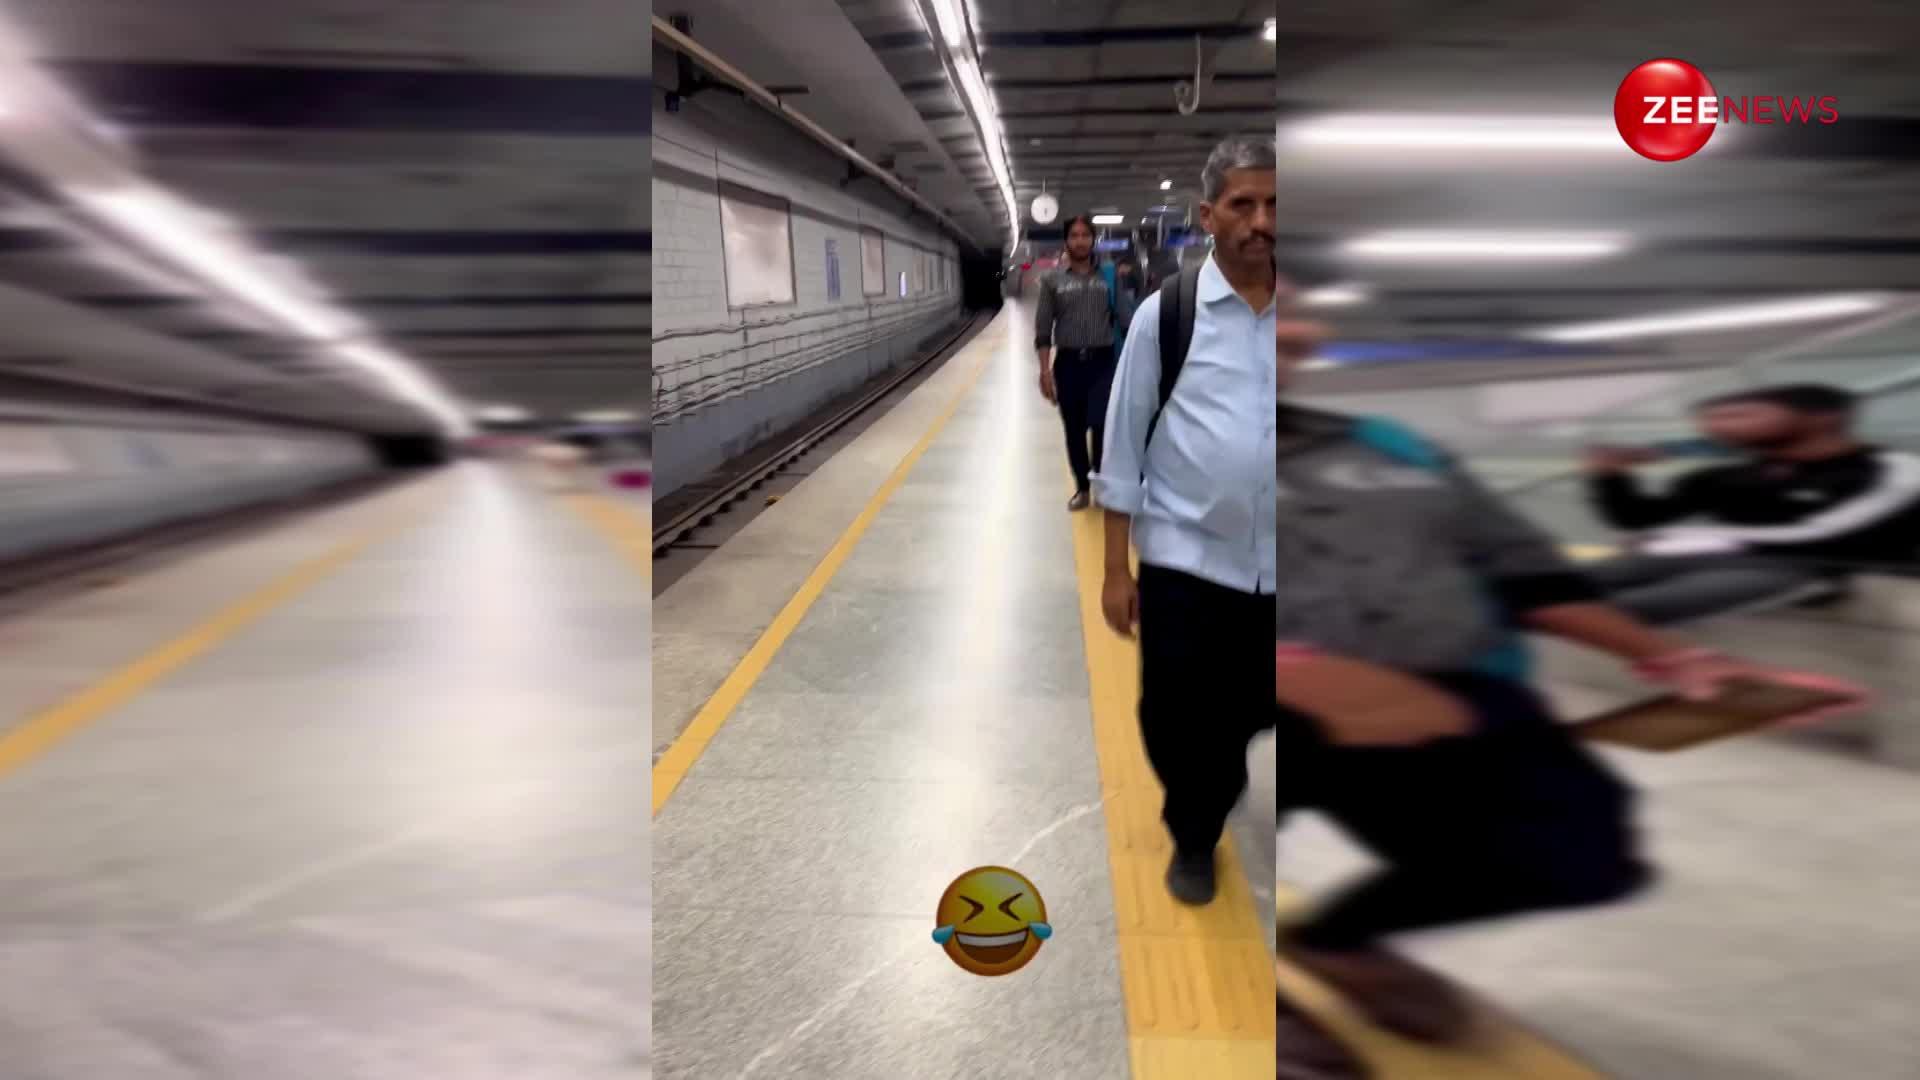 माथे पर बिंदी और मांग में सिंदूर लगाकर मेट्रो स्टेशन जा पहुंचा ये लड़का, देख लोगों ने बना डाला वायरल वीडियो